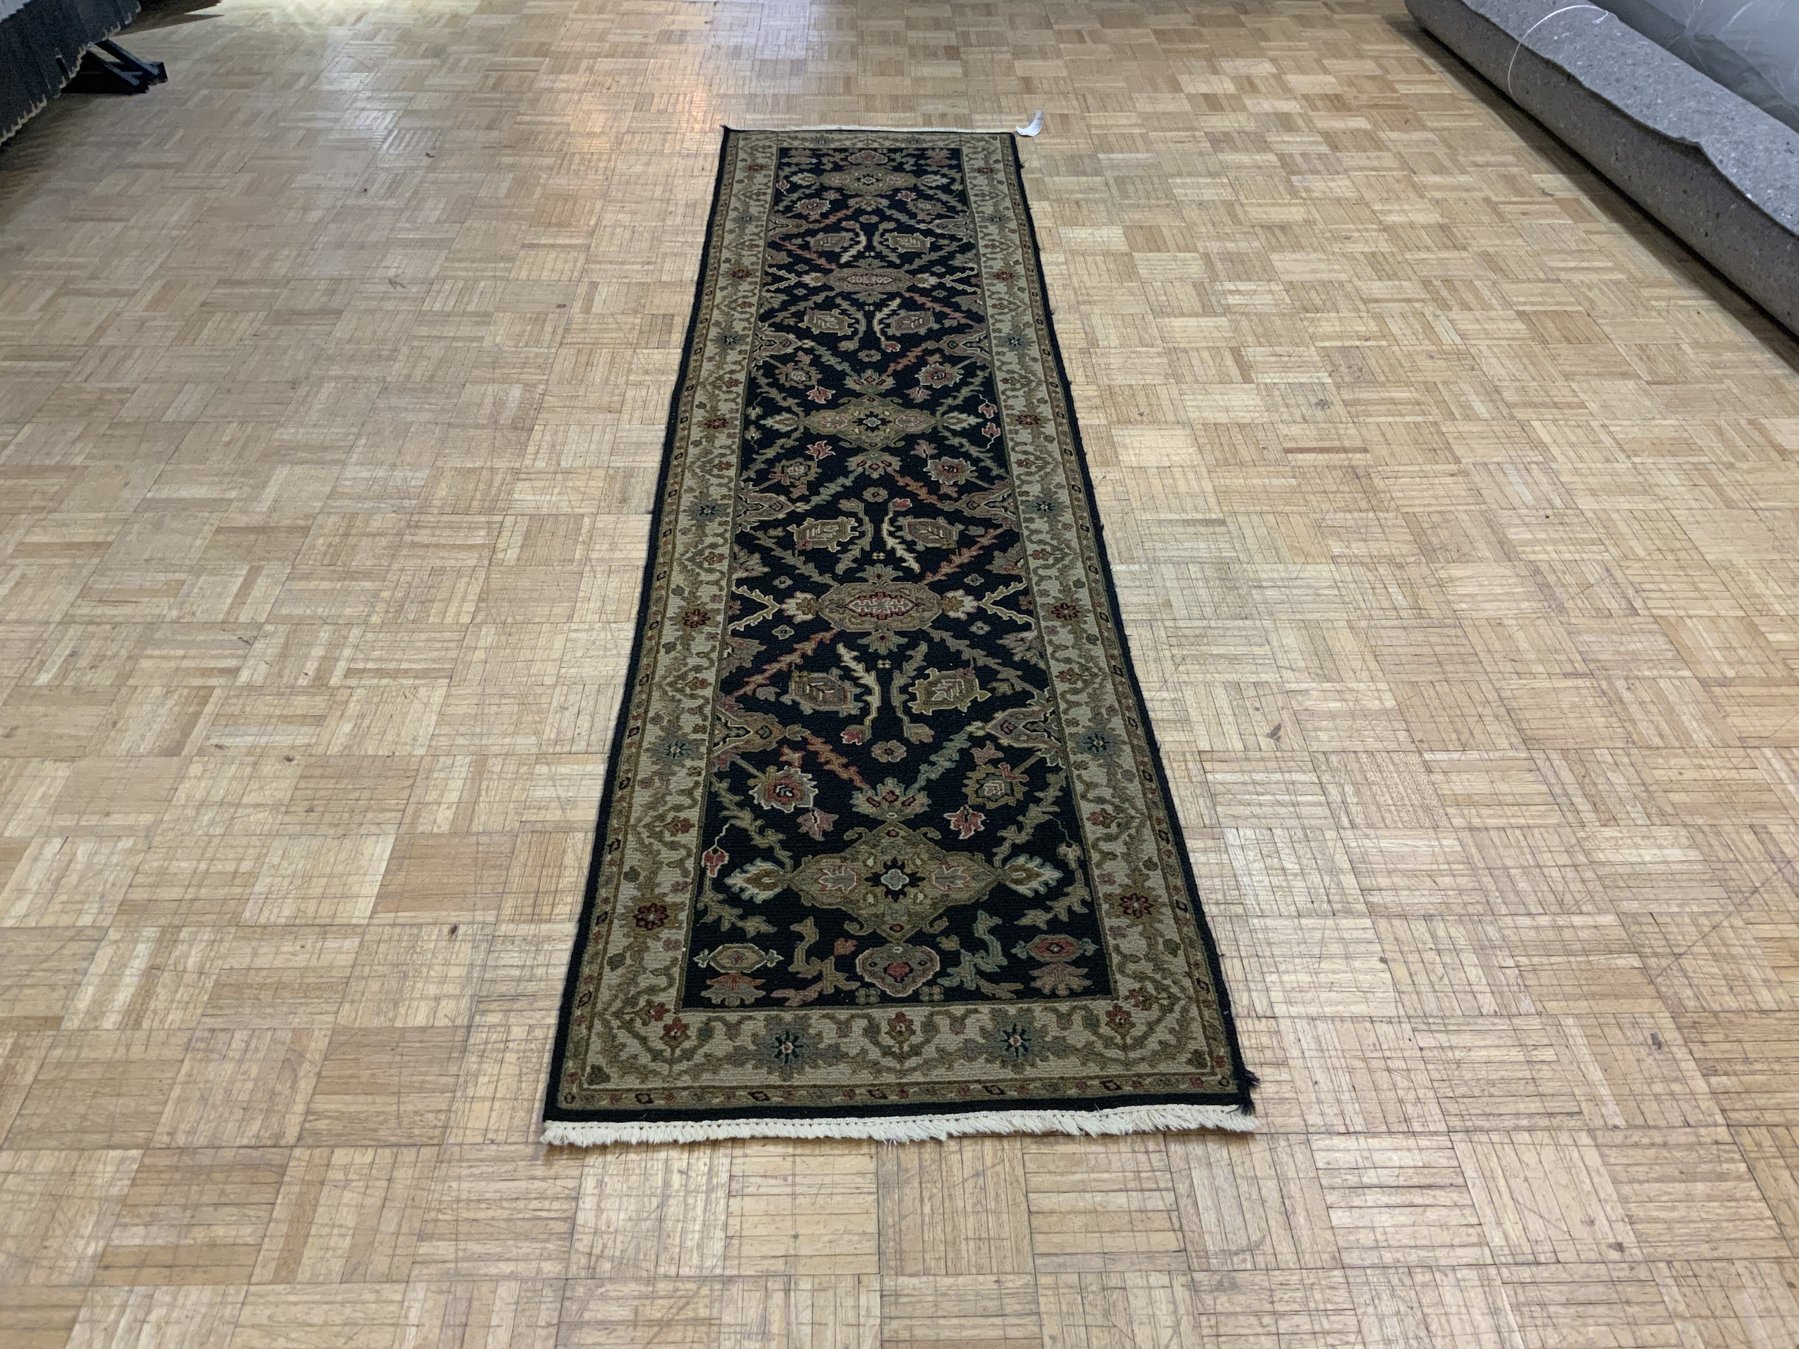 David Tiftickjian & Sons, oriental rugs, Buffalo rugs, oriental rug dealers Buffalo, Buffalo flooring, modern rugs, new rugs, used rugs, vintage rugs, runner rugs, runners